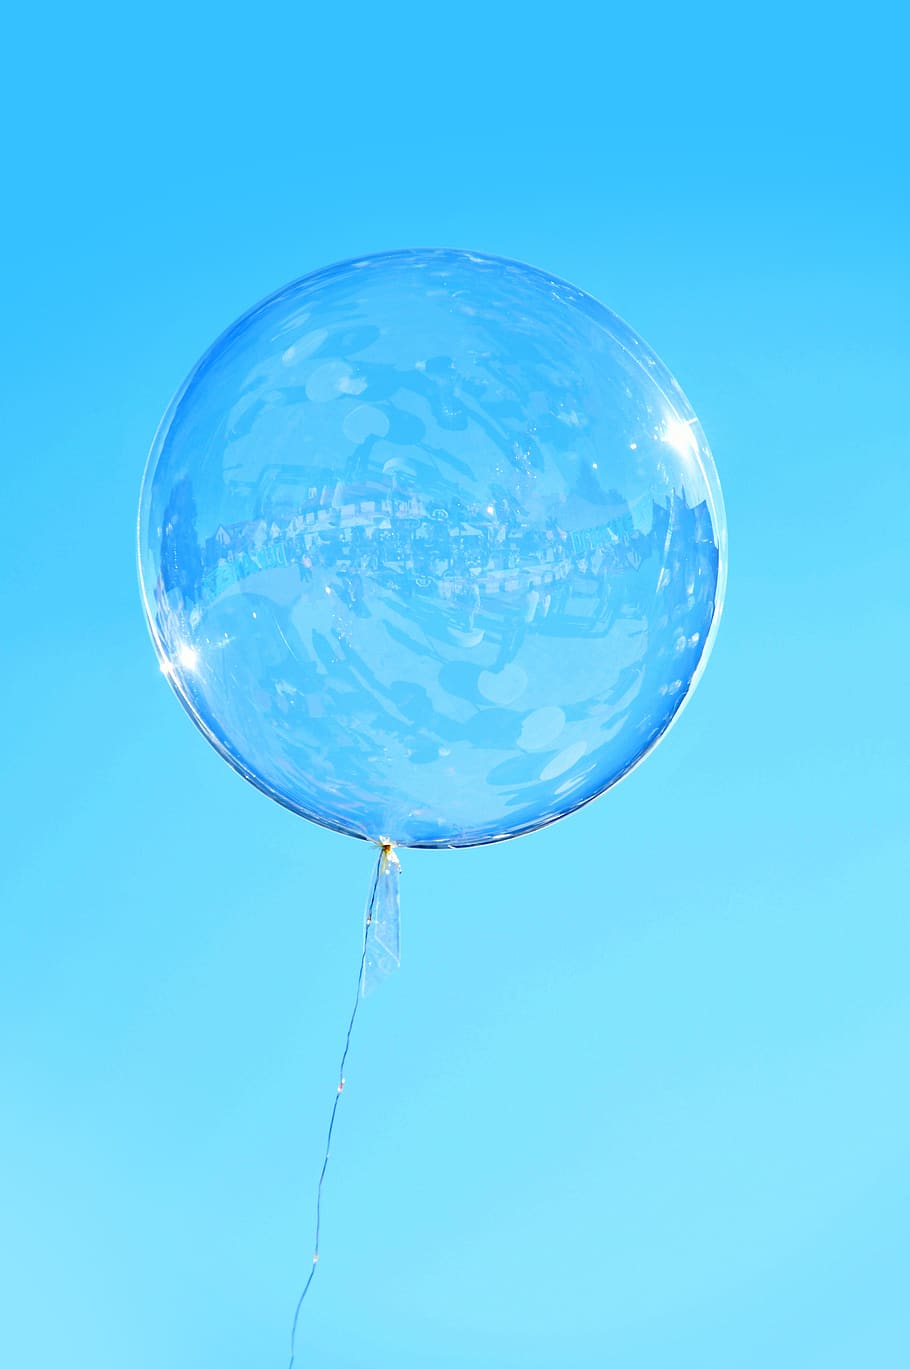 balões, balão, balão de gás, voar, ar, voo, vento, inflável, passatempo, figuras de balão